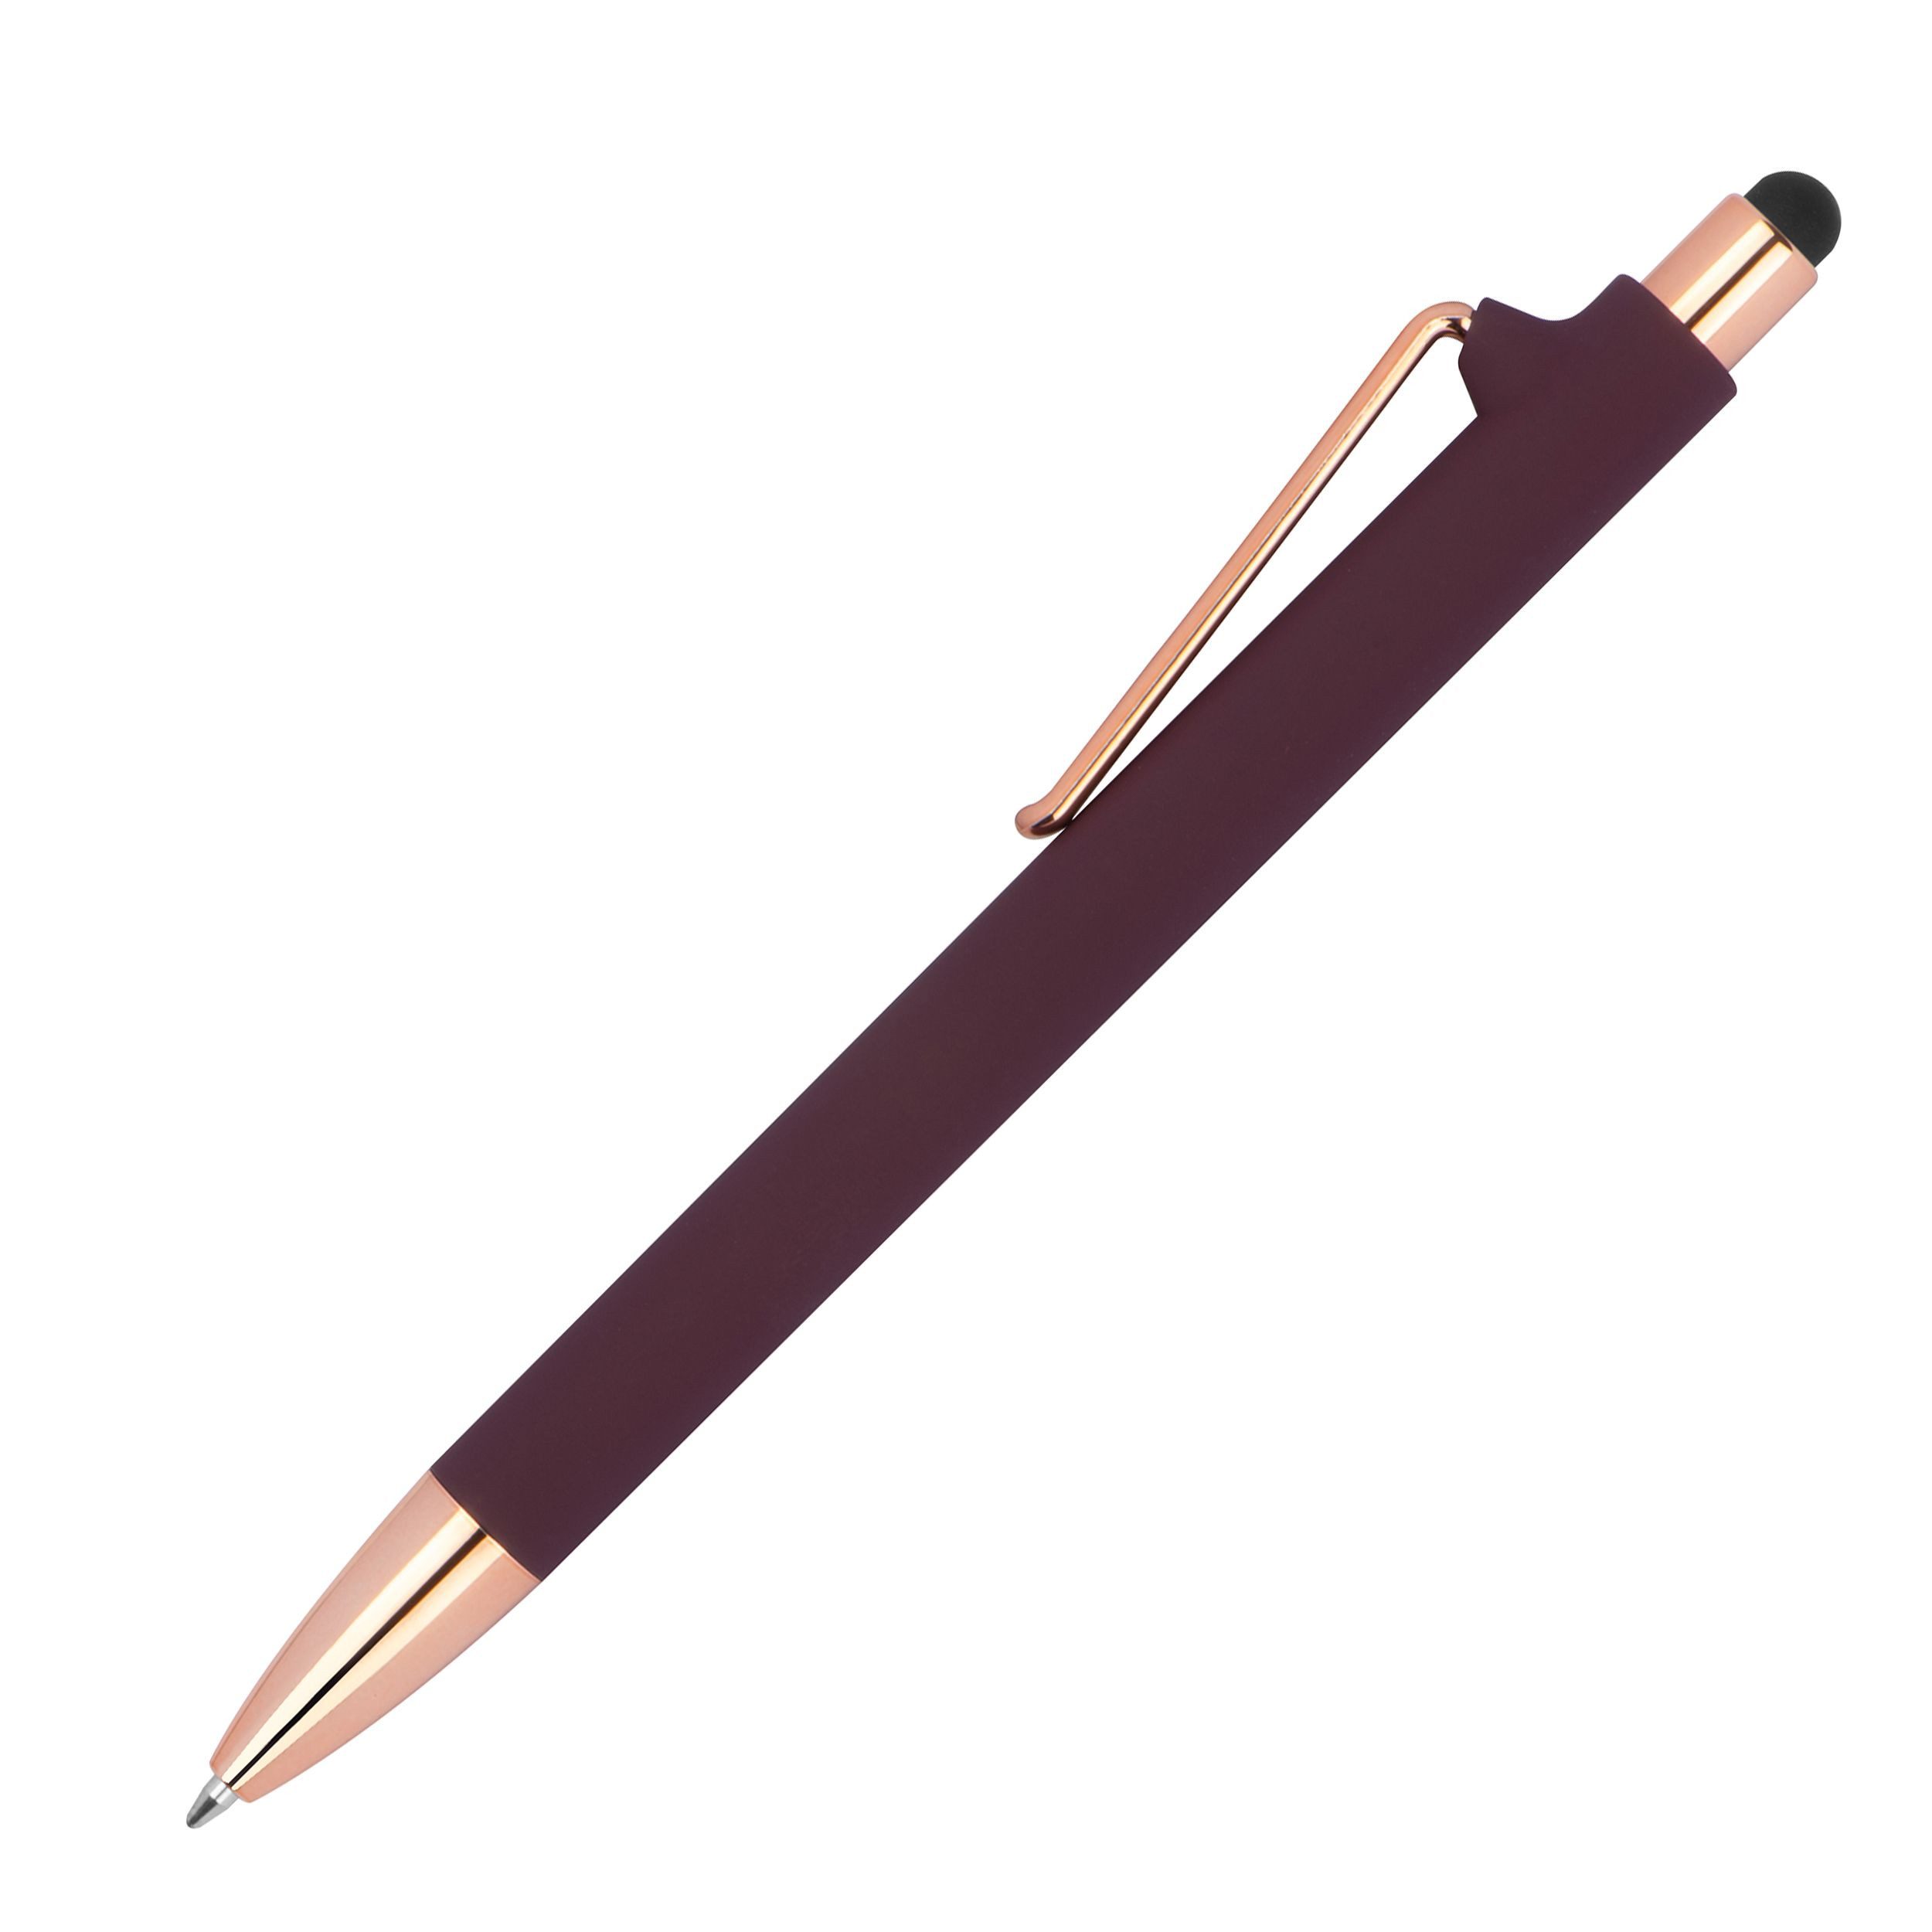 Livepac Office Kugelschreiber Touchpen-Kugelschreiber aus Metall / gummiert / Farbe: roségold-bordea